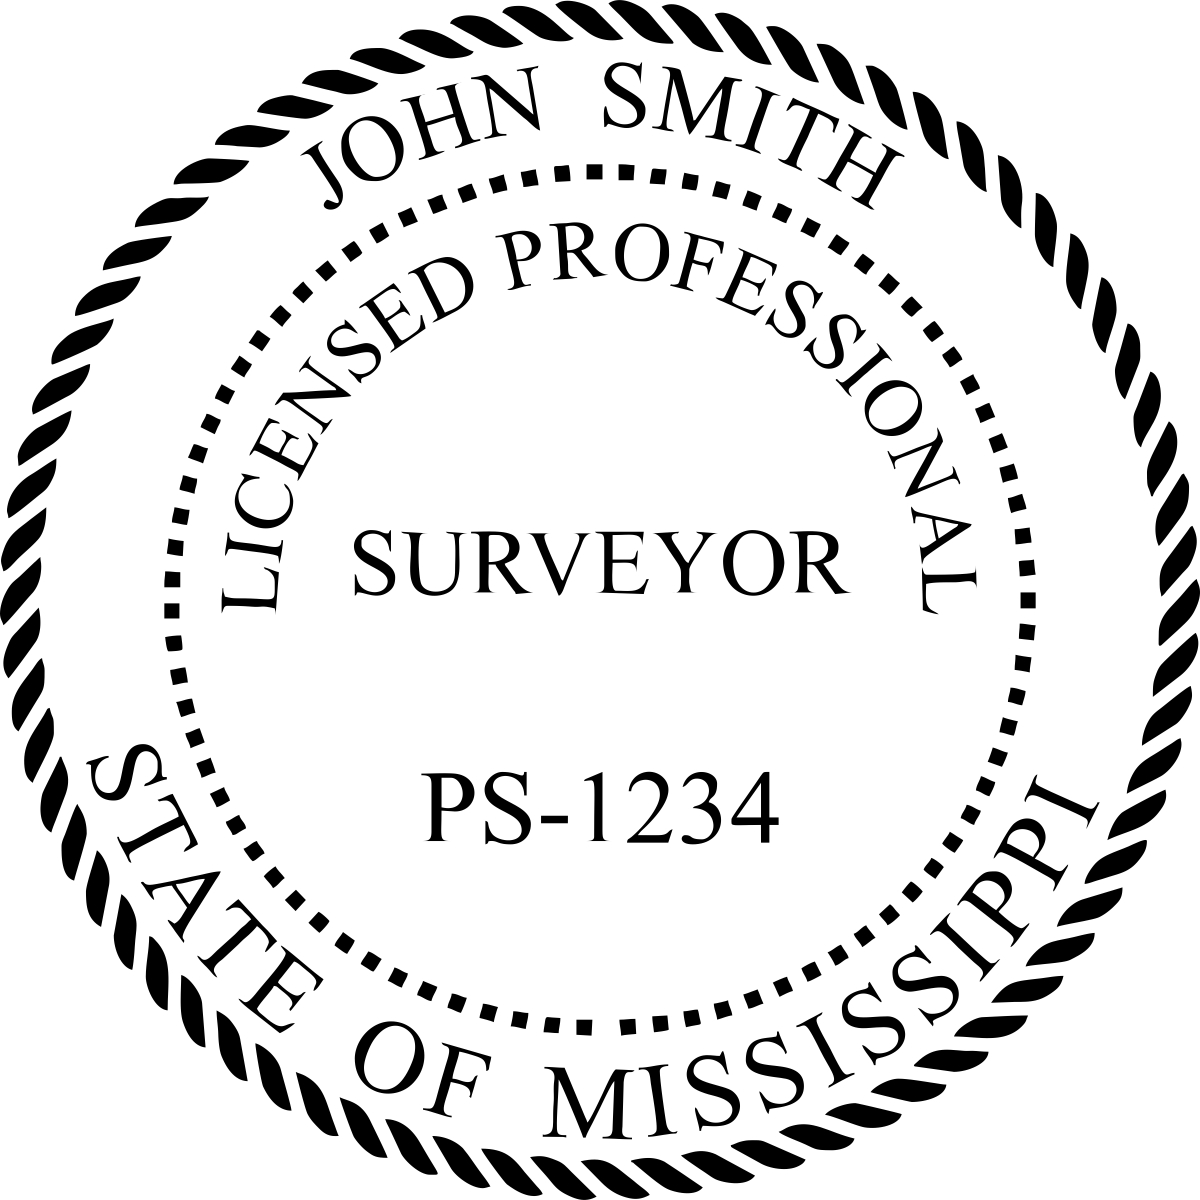 Land Surveyor Seal - Desk - Mississippi